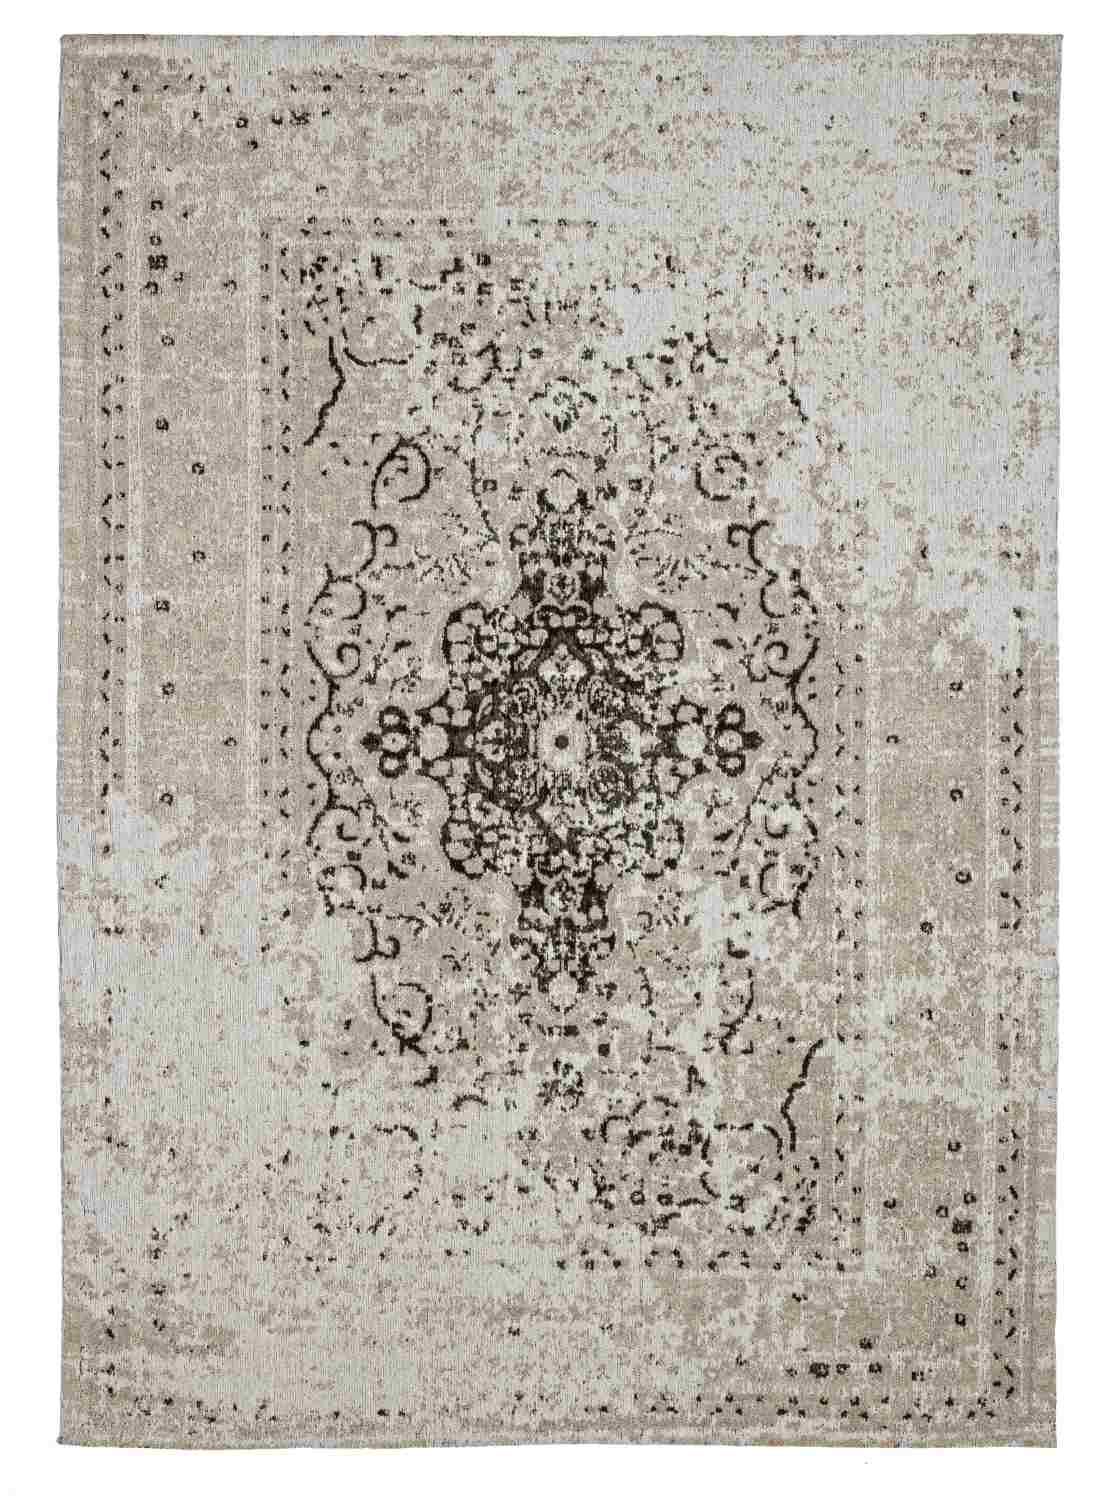 Der Teppich Jaipur überzeugt mit seinem klassischen Design. Gefertigt wurde die Vorderseite aus 95% Baumwolle und 5% Polyester, die Rückseite aus 100% Baumwolle. Der Teppich besitzt einen grauen Farbton und die Maße von 160x230 cm.